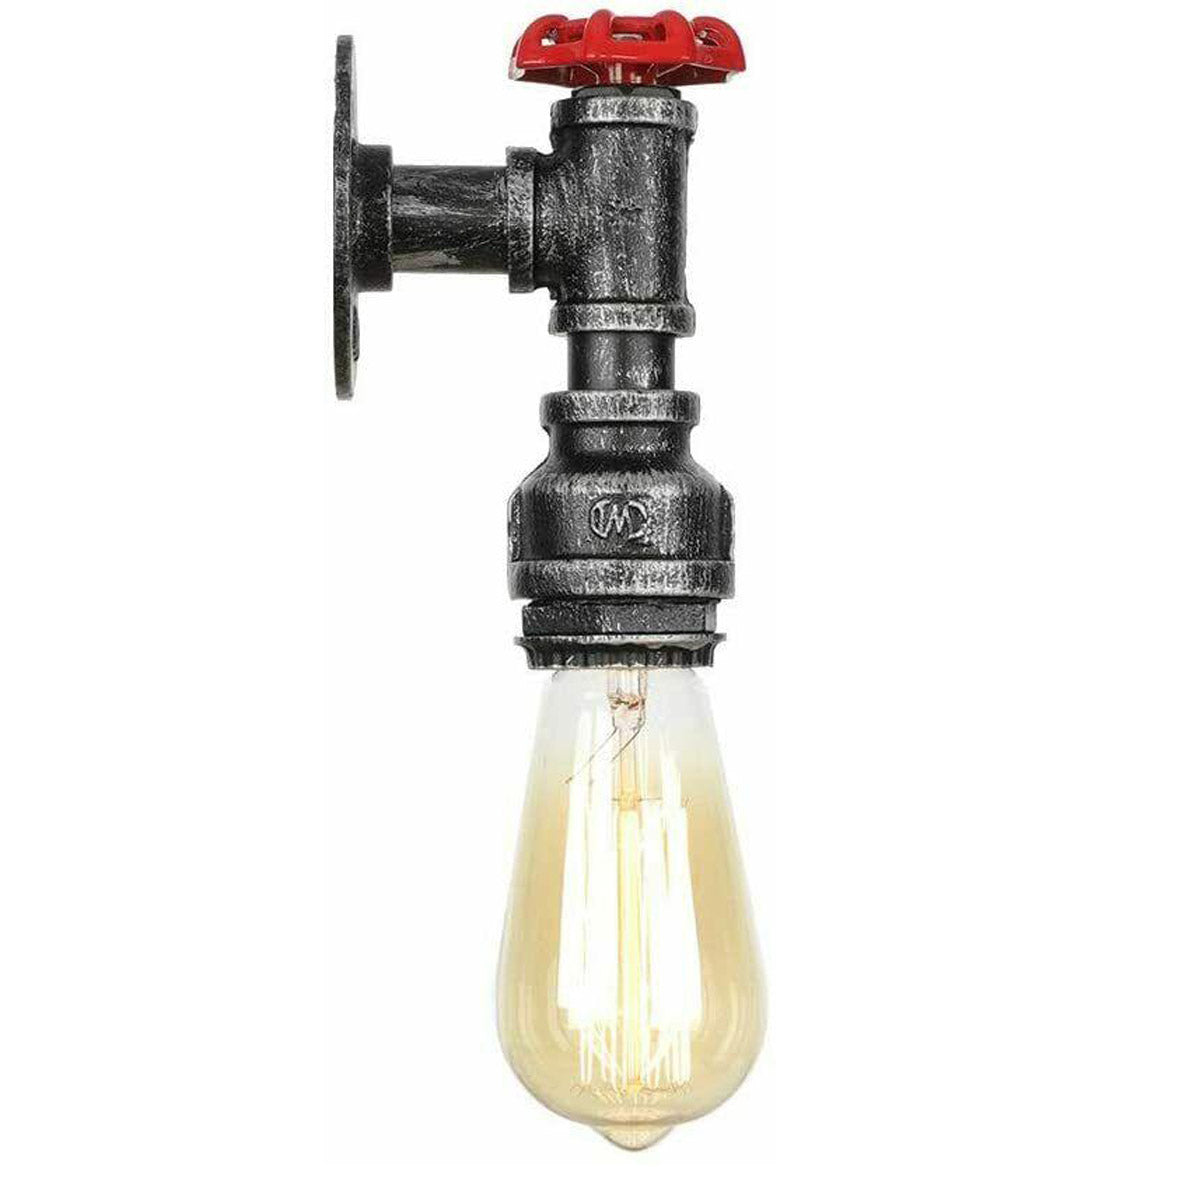 Vintage Industrial Ceiling Wall Light Lamp Metal Water pipe Rustic Steam punk UK~2168 - LEDSone UK Ltd